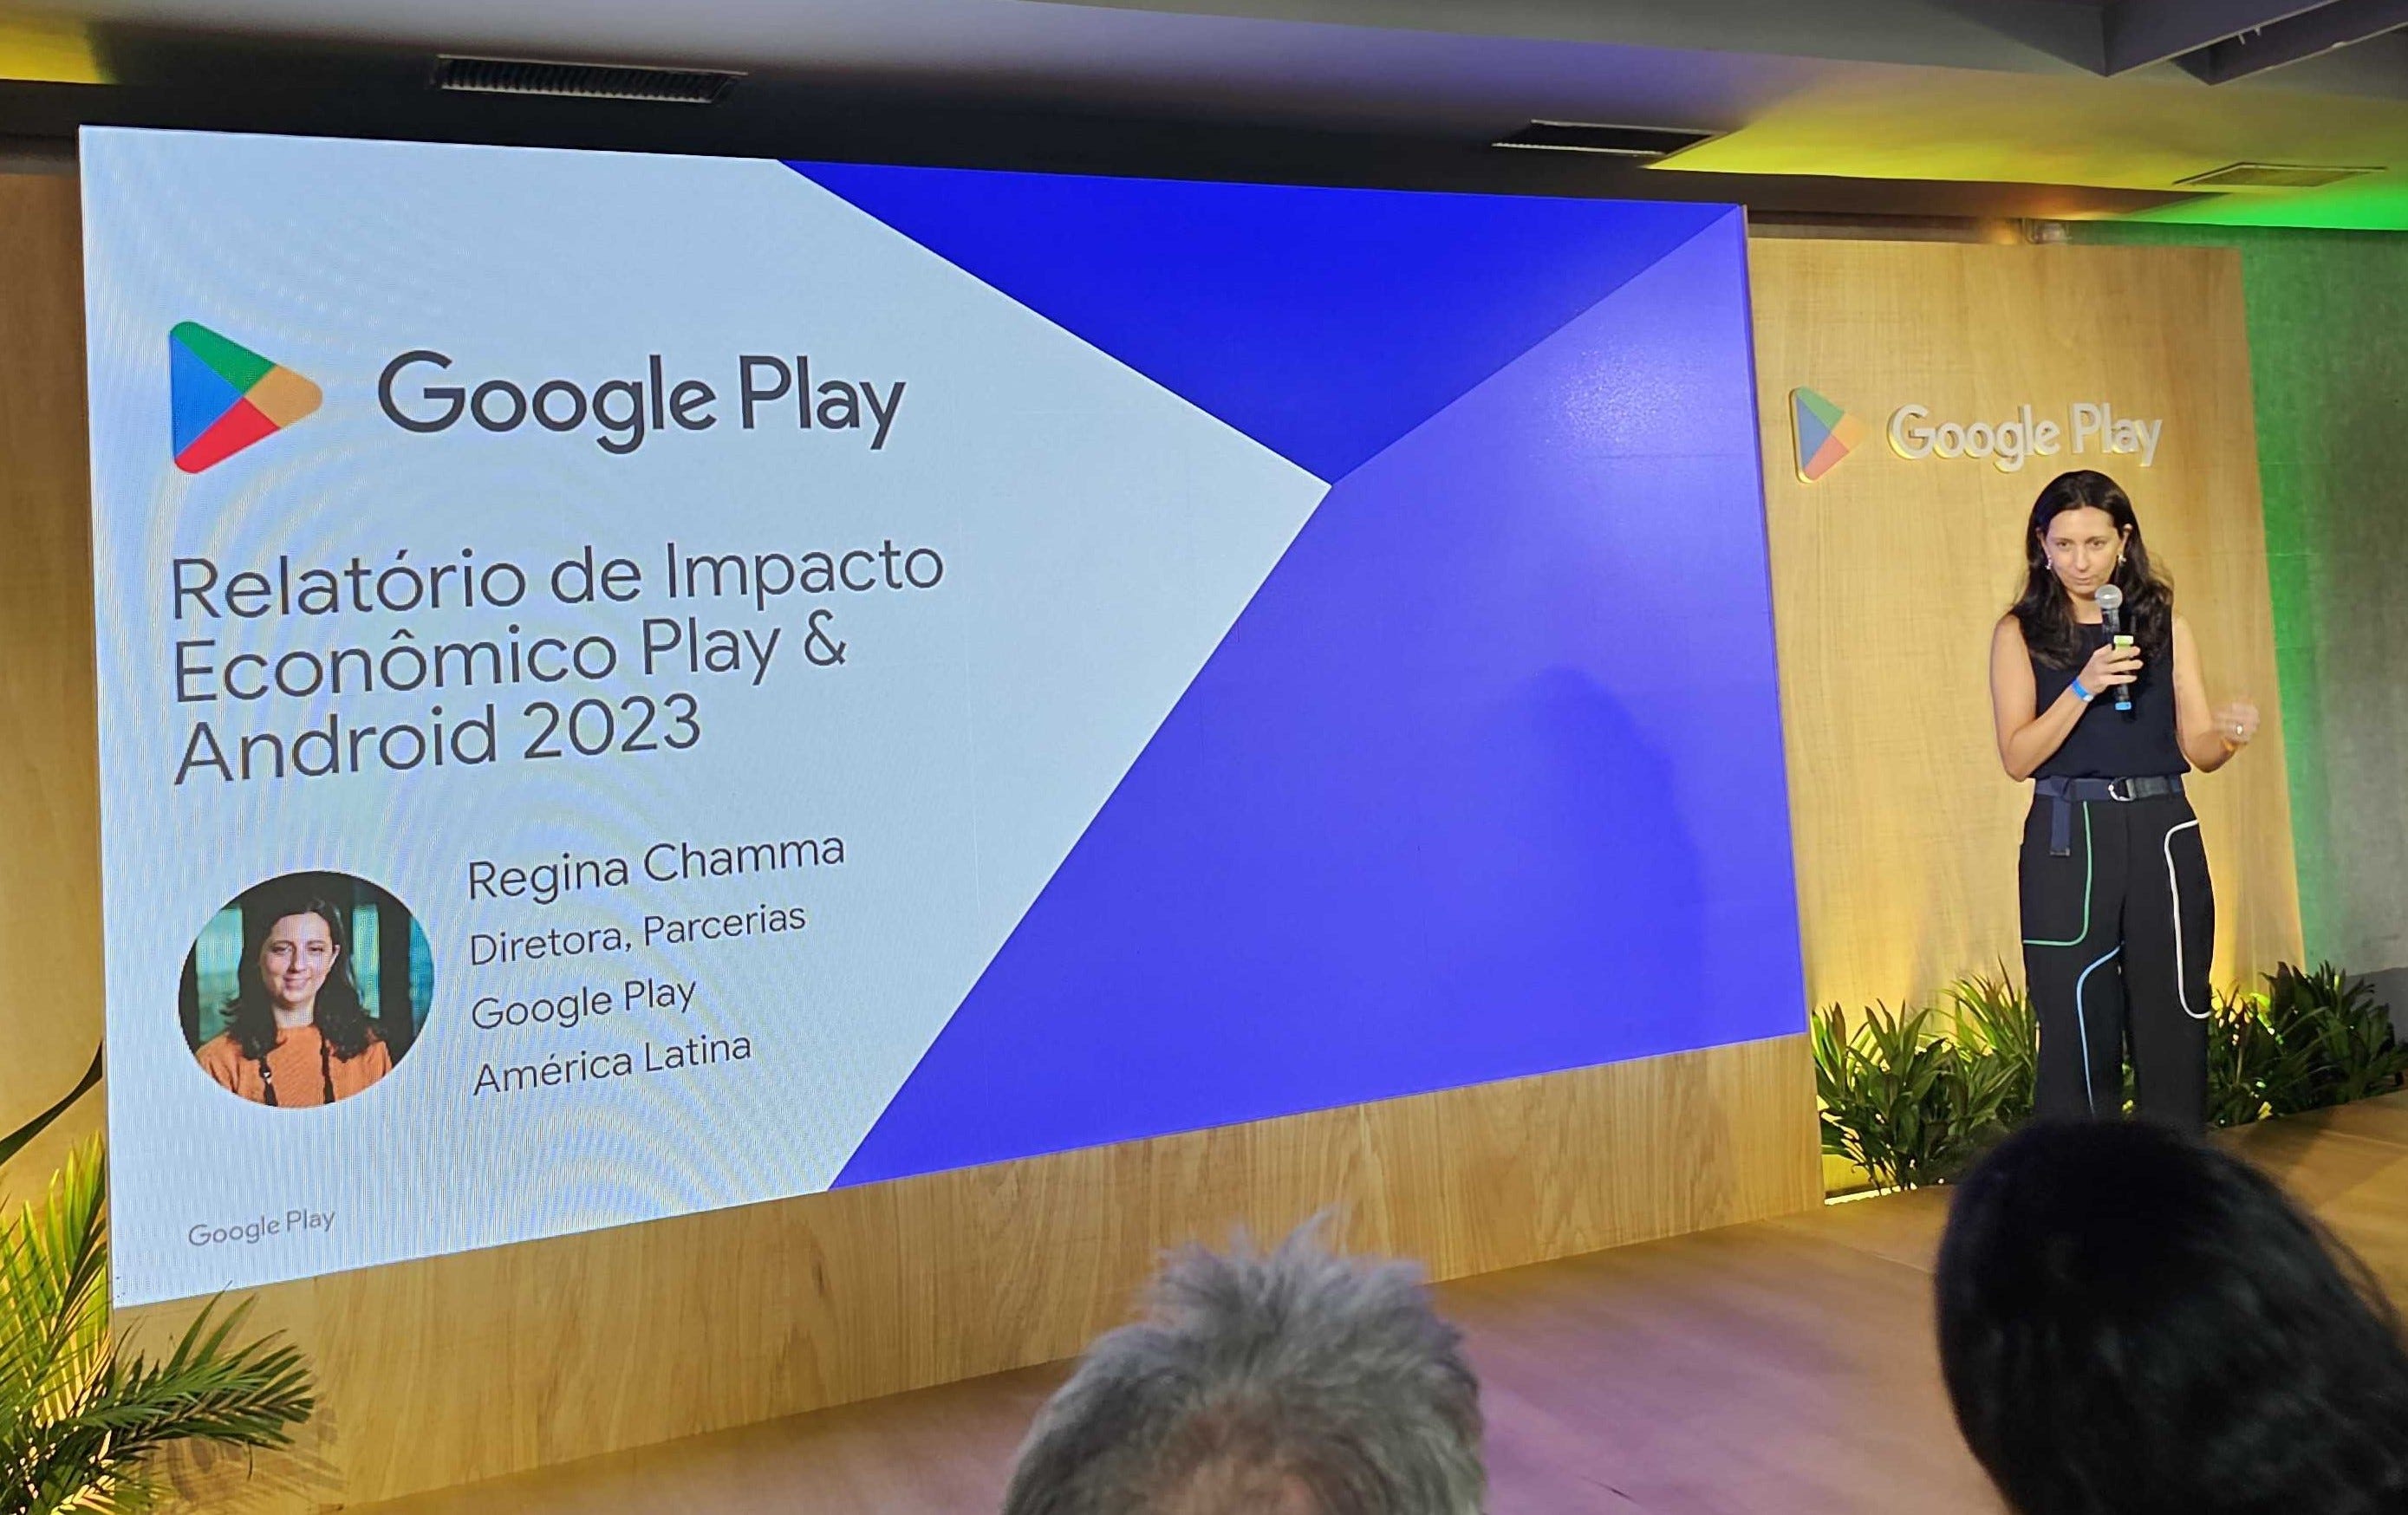 Assinatura de apps do Google estreia na América Latina 